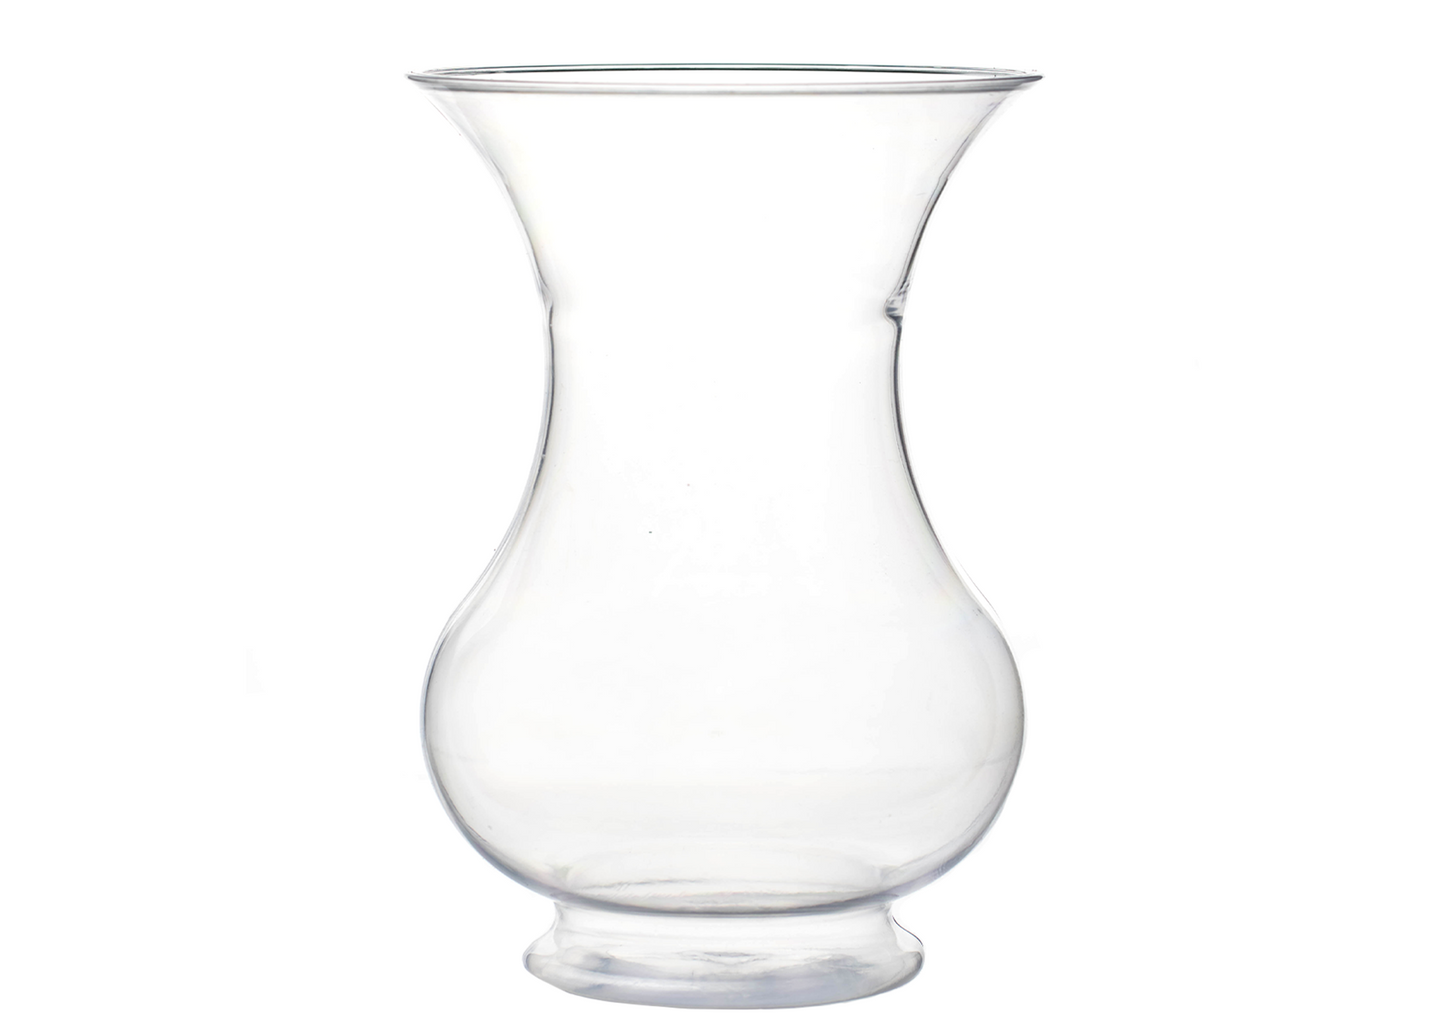 8.5" - Acrylic Pedestal vase